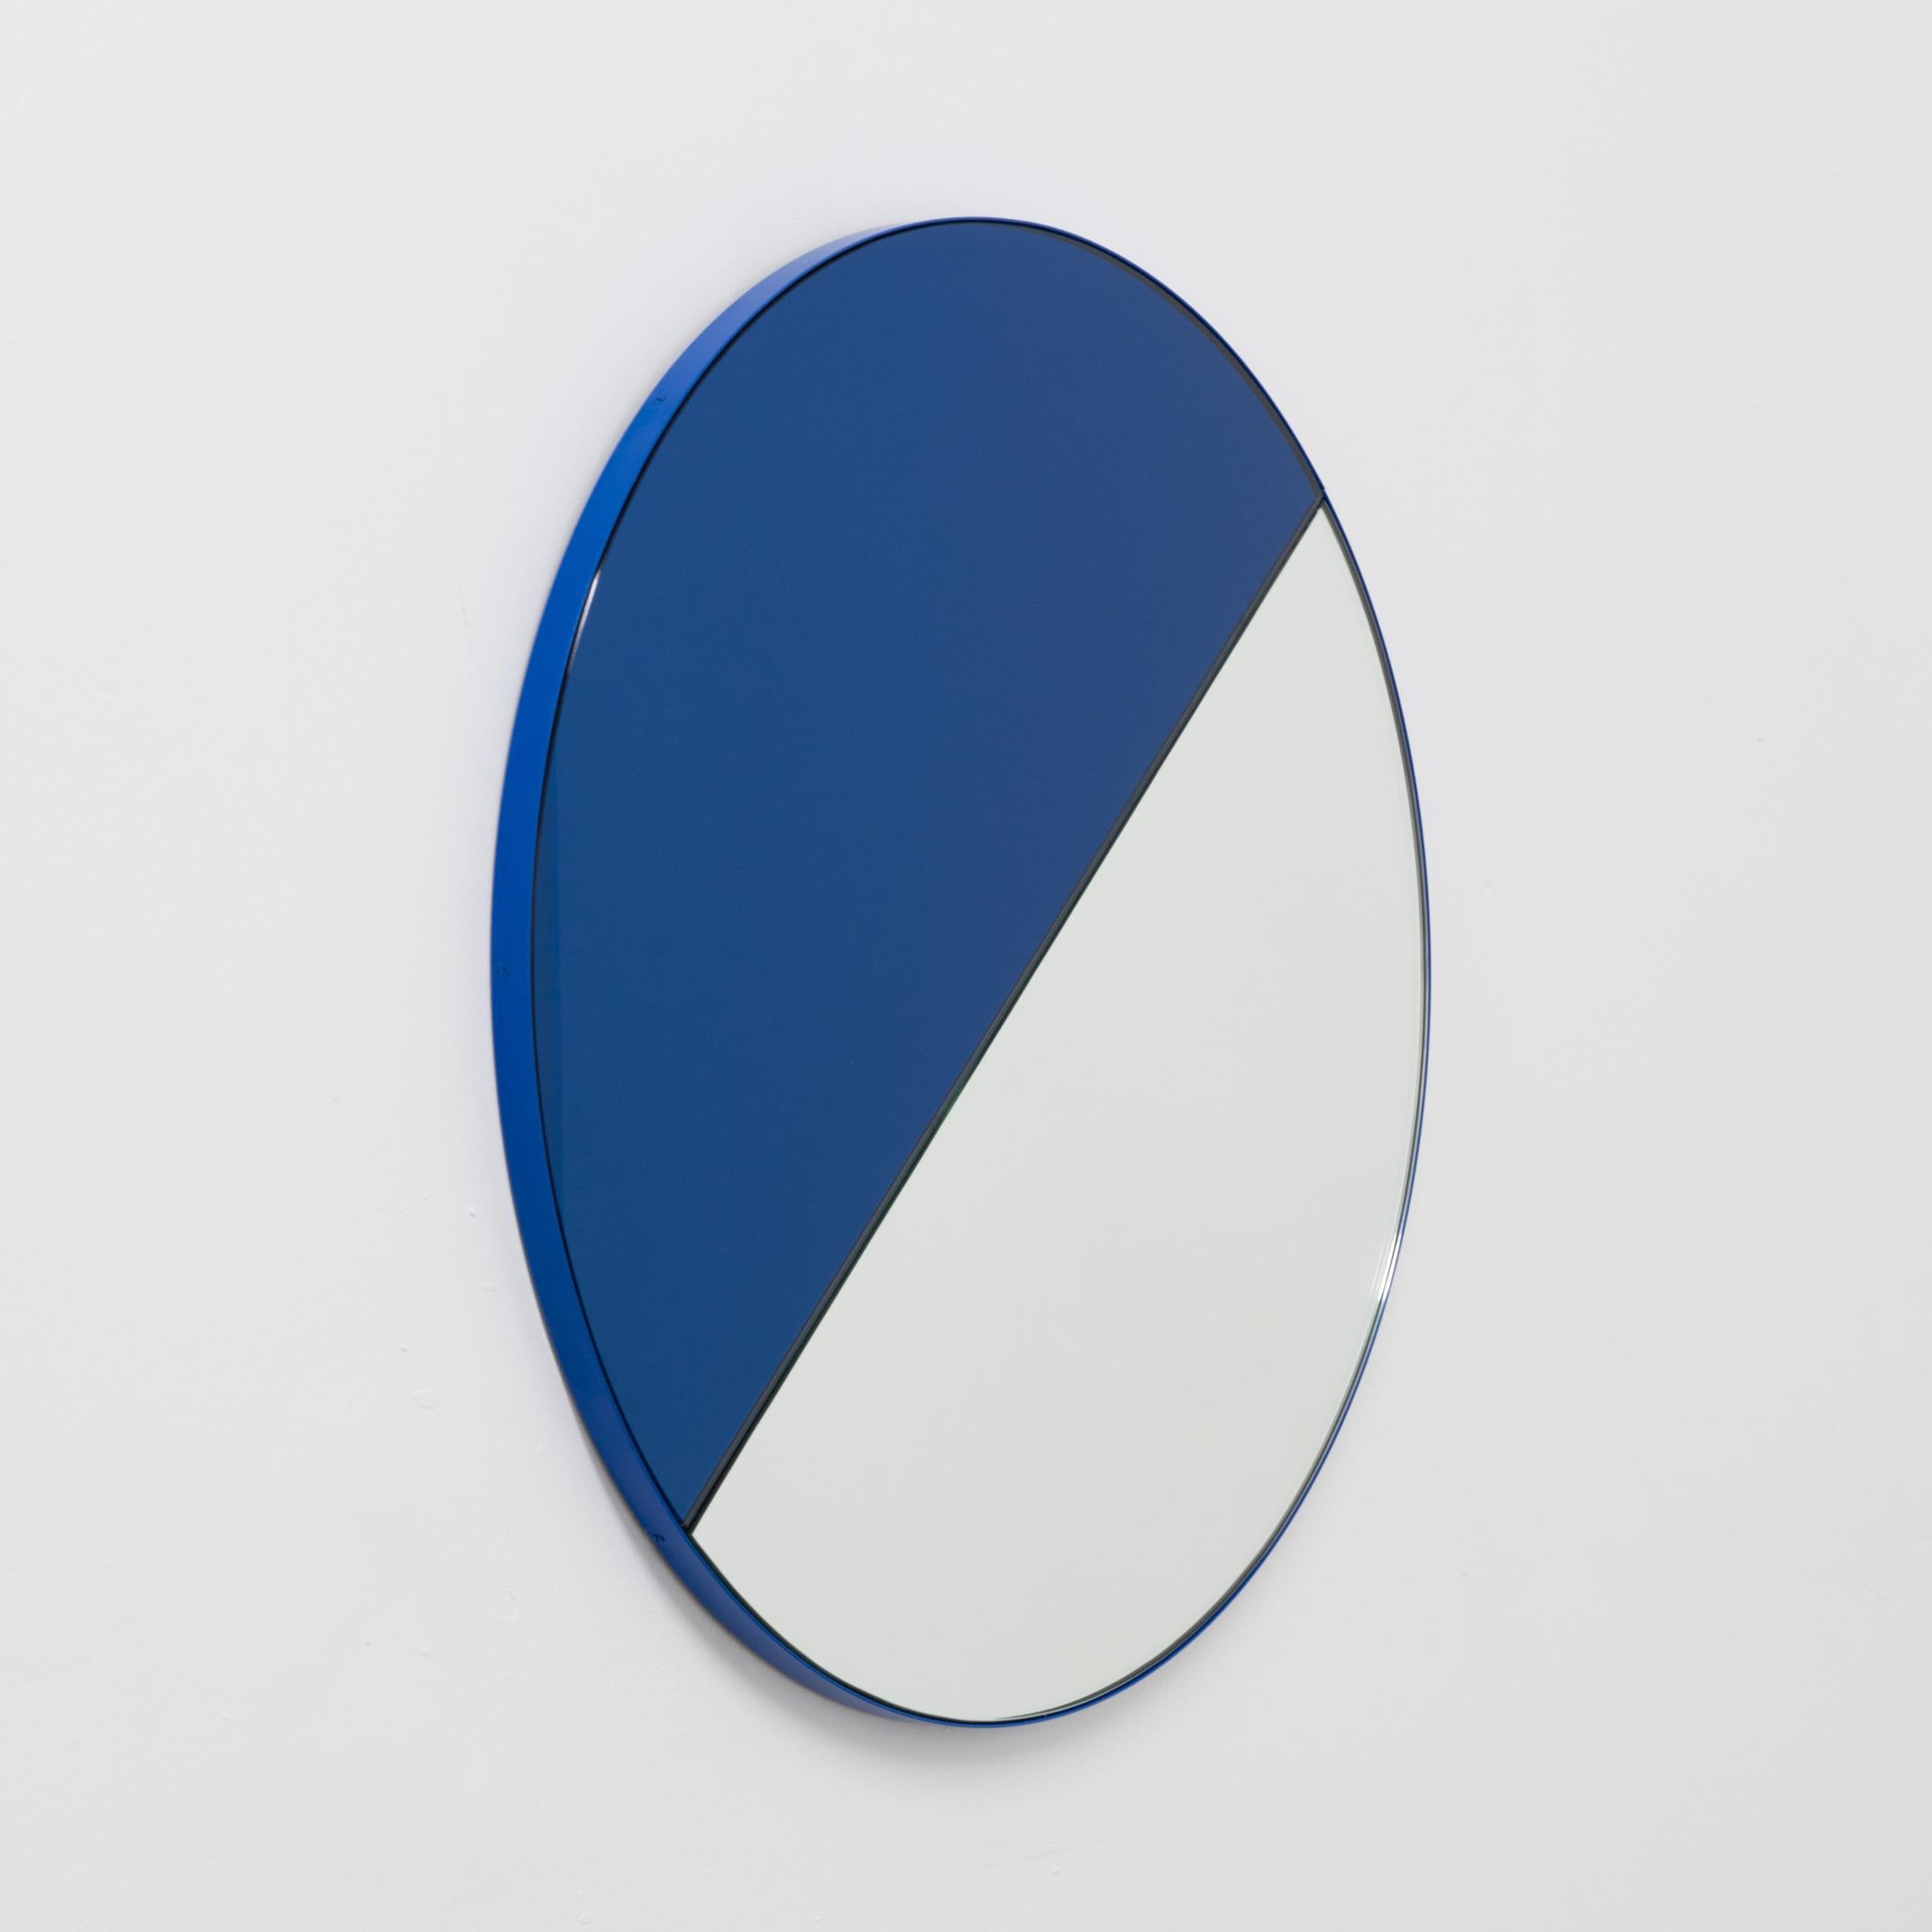 Aluminium Orbis Dualis Contemporary Blue and Silver Round Mirror with Blue Frame, Large (Miroir rond contemporain bleu et argent avec cadre bleu) en vente